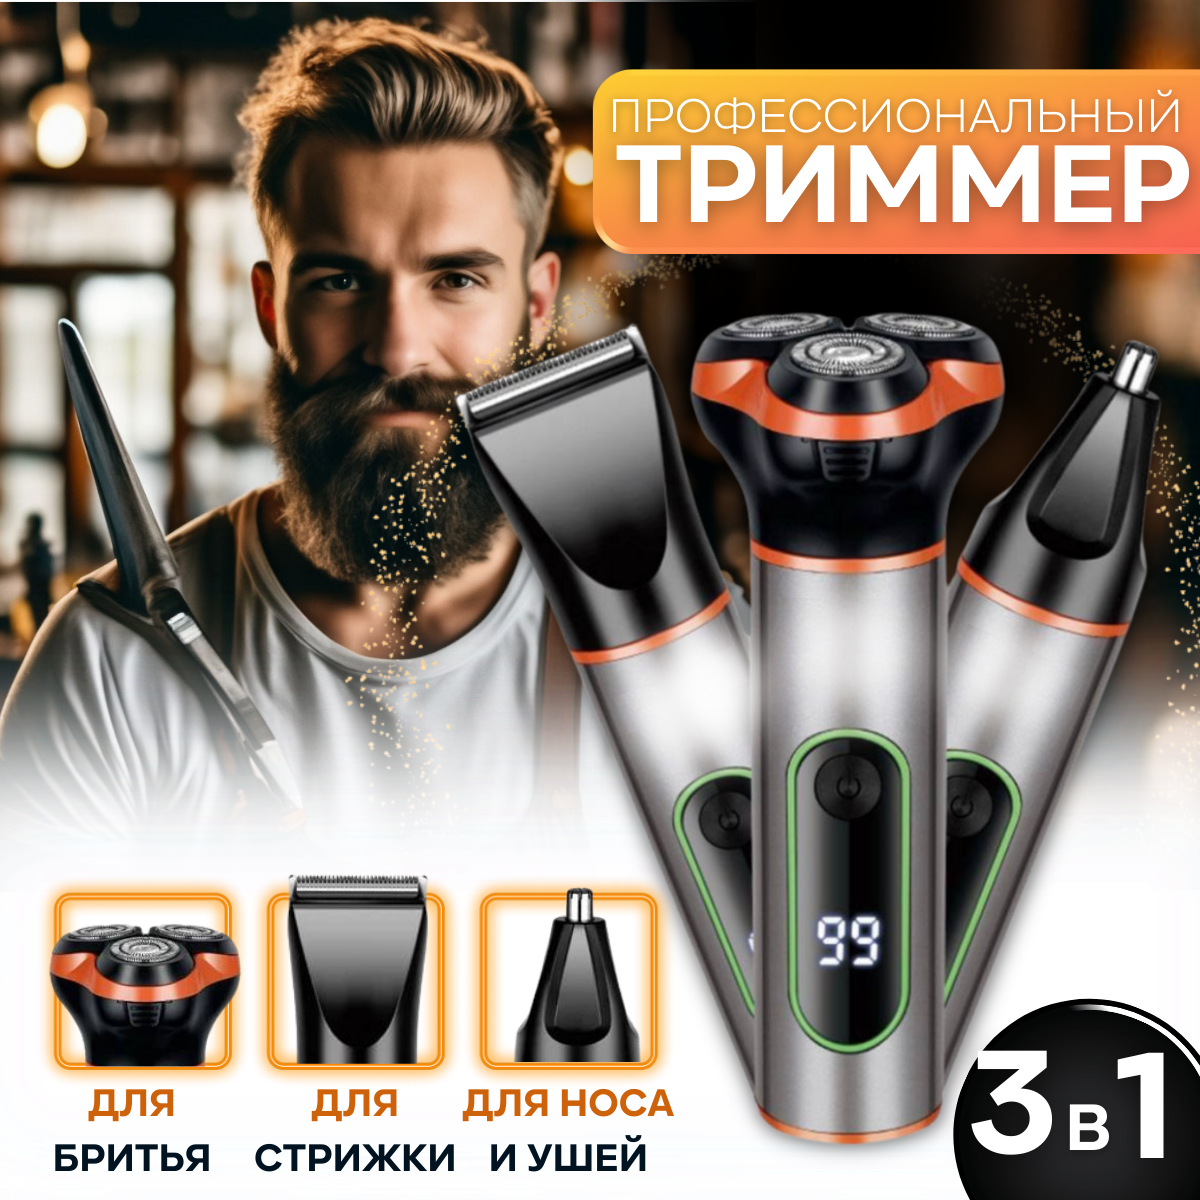 Электробритва Top Brend Shop 3в1 черная, оранжевая набор подарочный для мужчин svoboda natural свежесть гор шампунь бальзам 2в1 для влос гель для душа